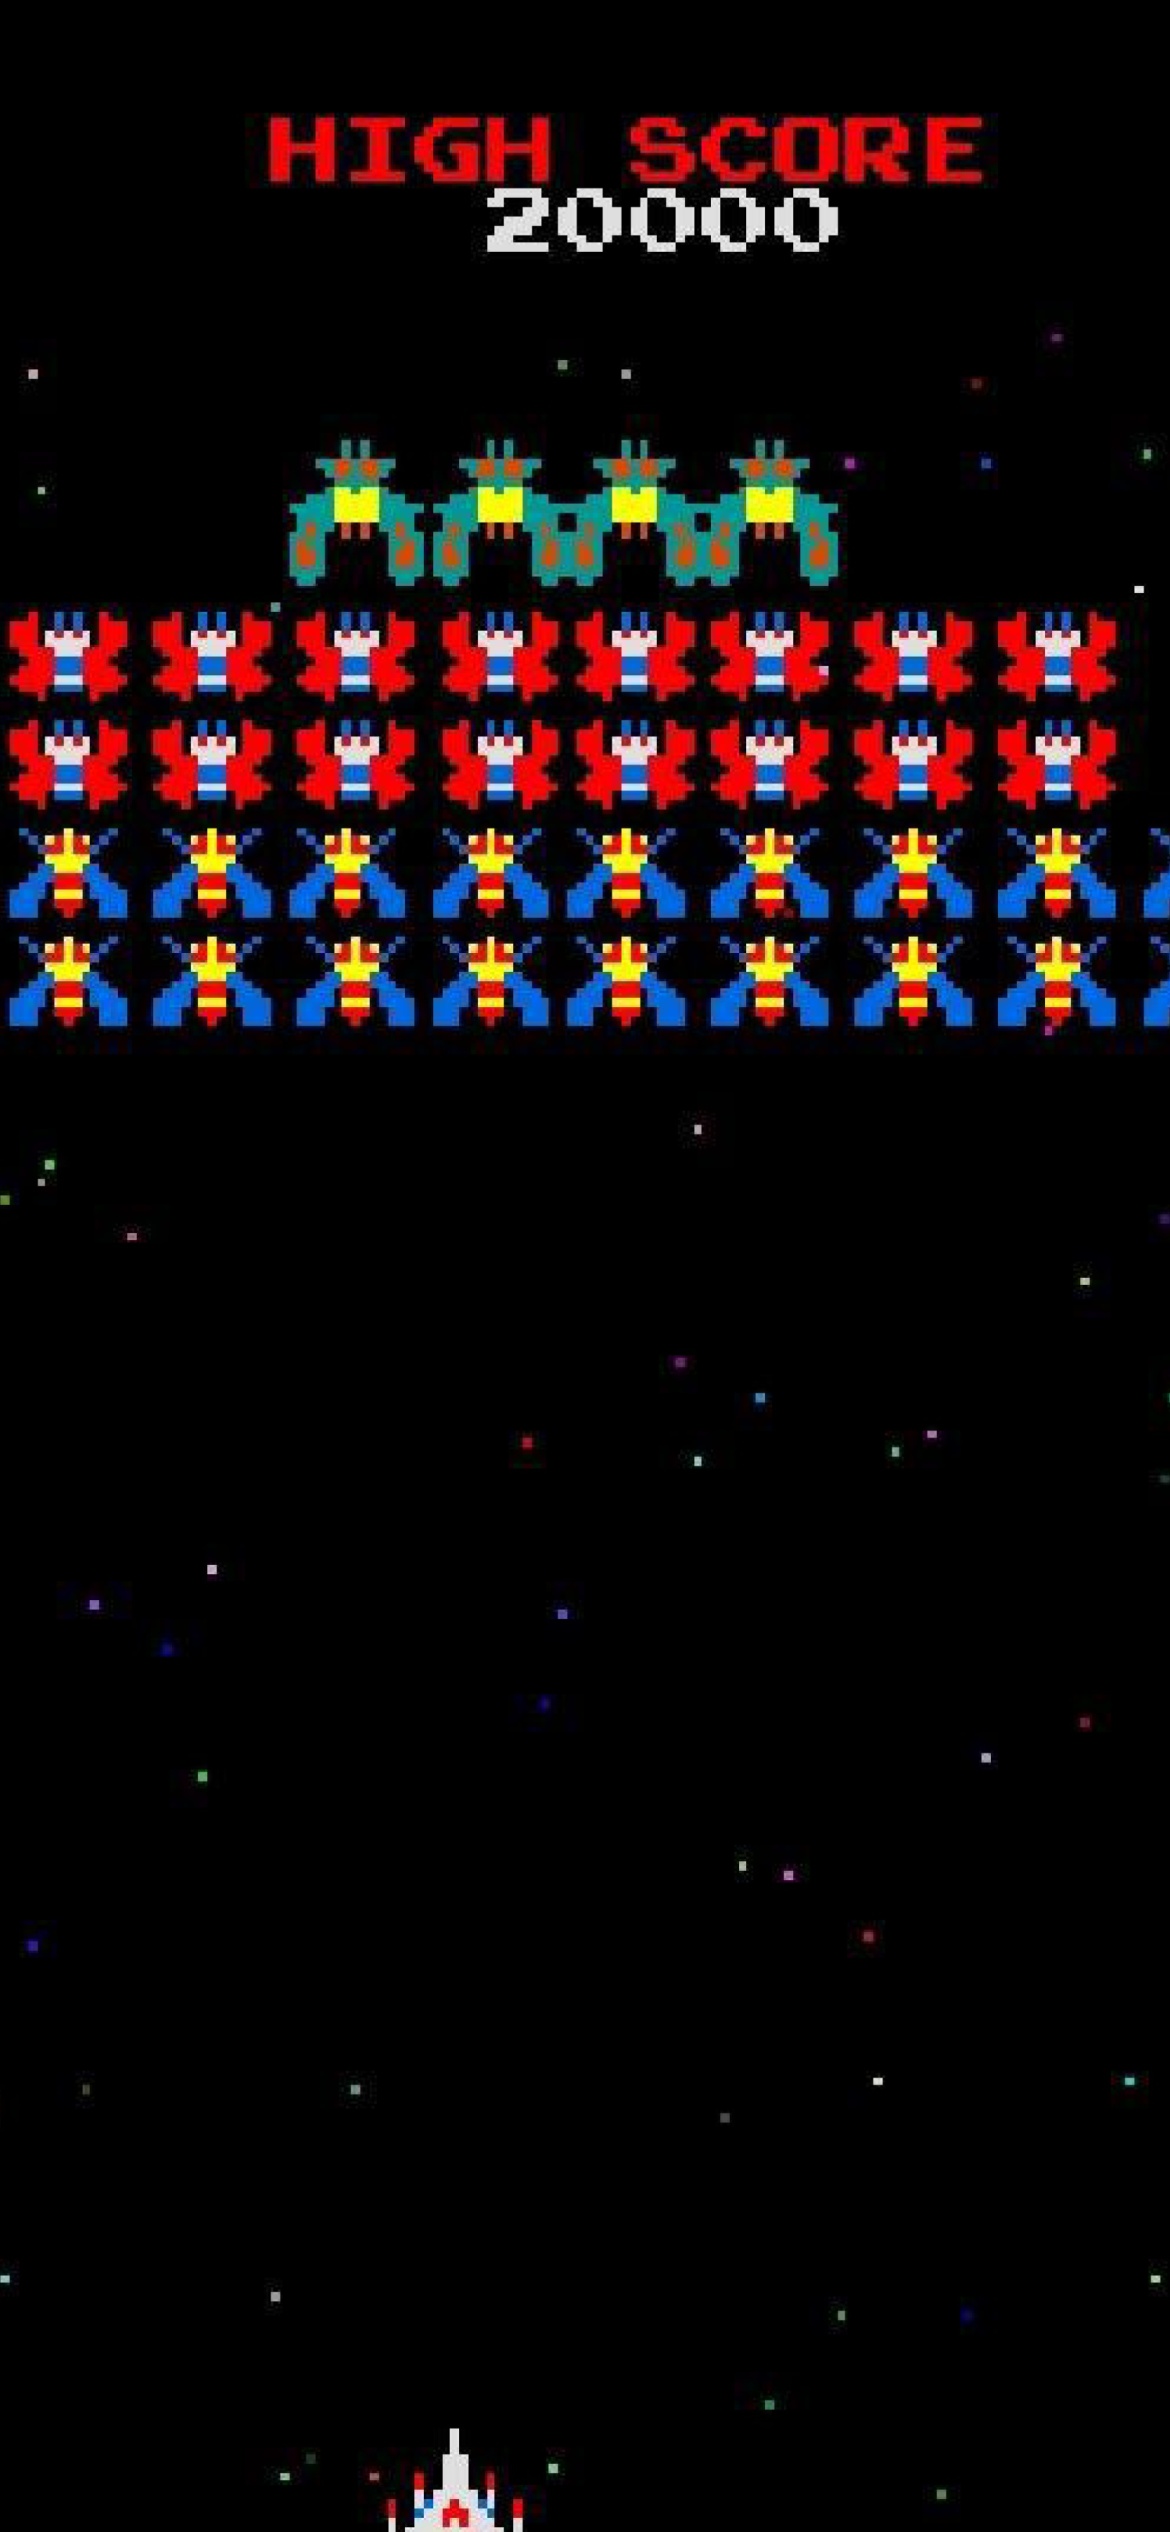 Galaxian Galaga Nintendo Arcade Game screenshot #1 1170x2532